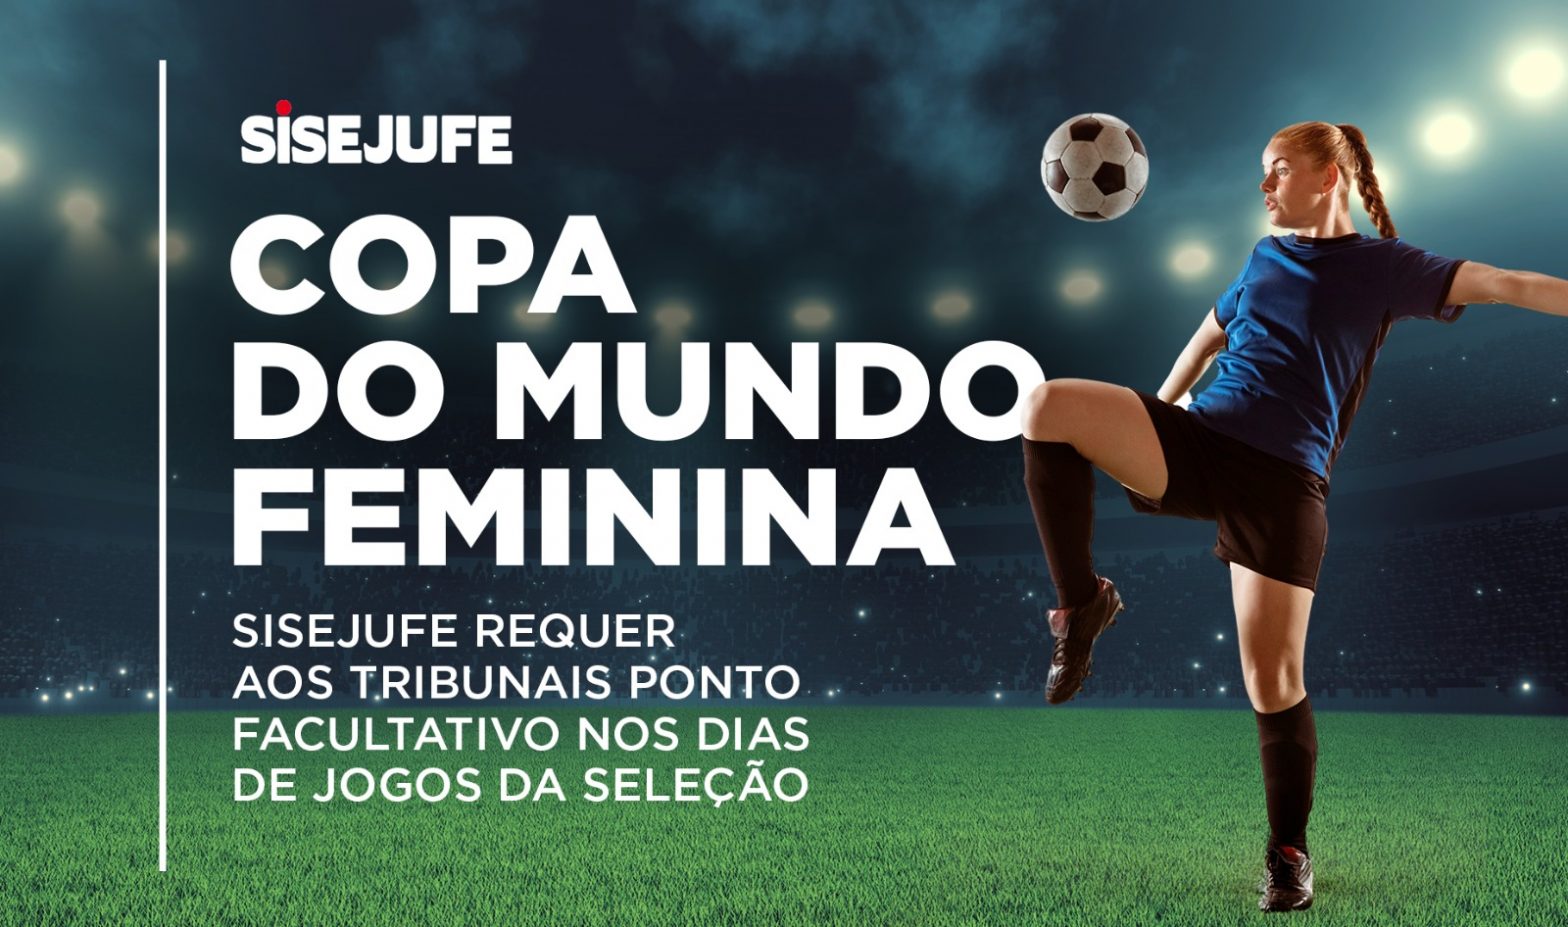 Copa do Mundo Feminina: Sisejufe requer aos tribunais ponto facultativo nos dias de jogos da seleção, SISEJUFE